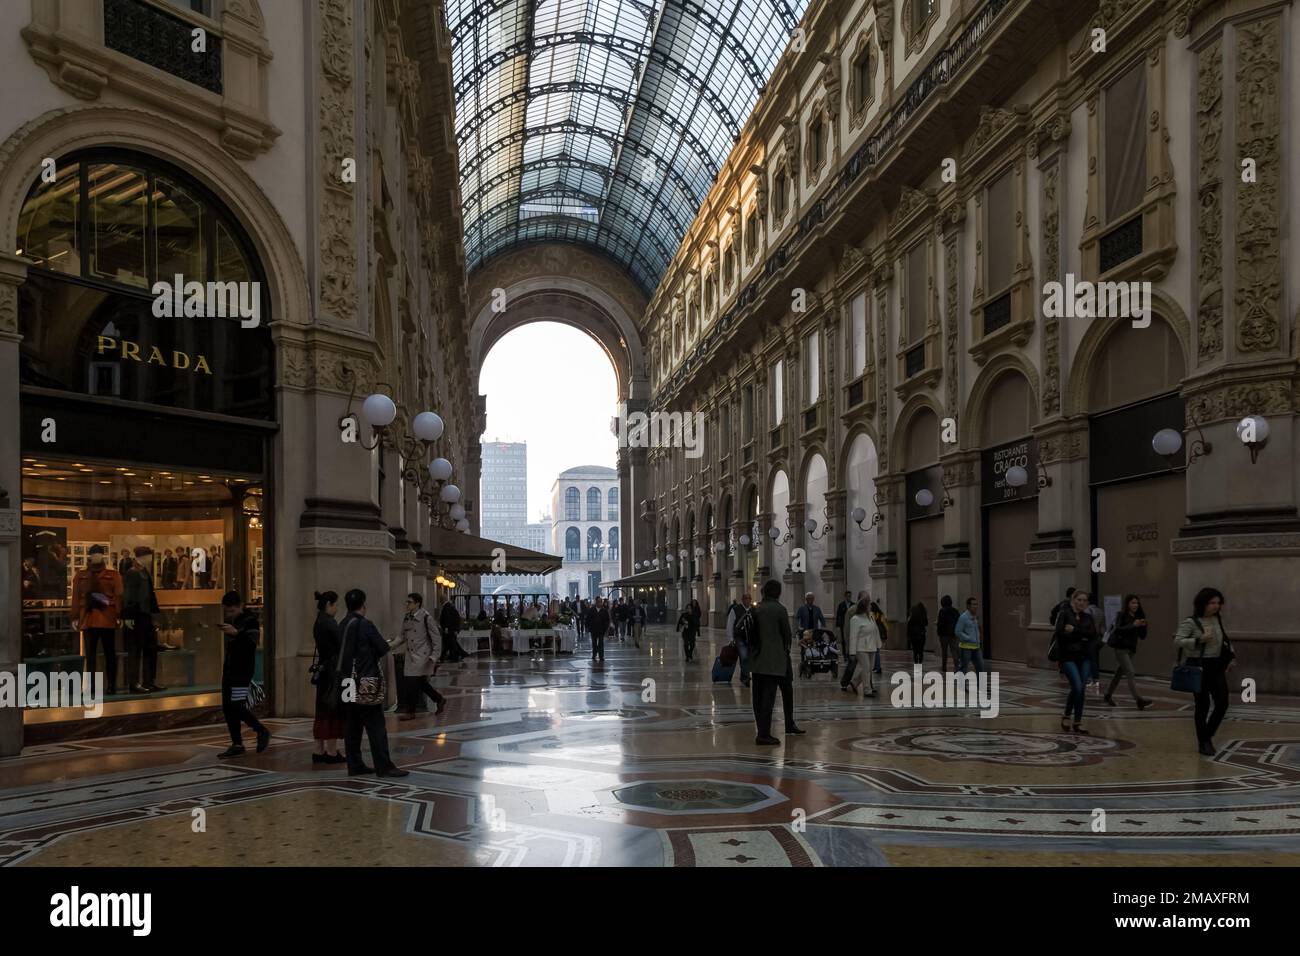 Particolare architettonico della Galleria Vittorio Emanuele II, la più antica galleria commerciale attiva d'Italia e un importante punto di riferimento della città di Milano Foto Stock